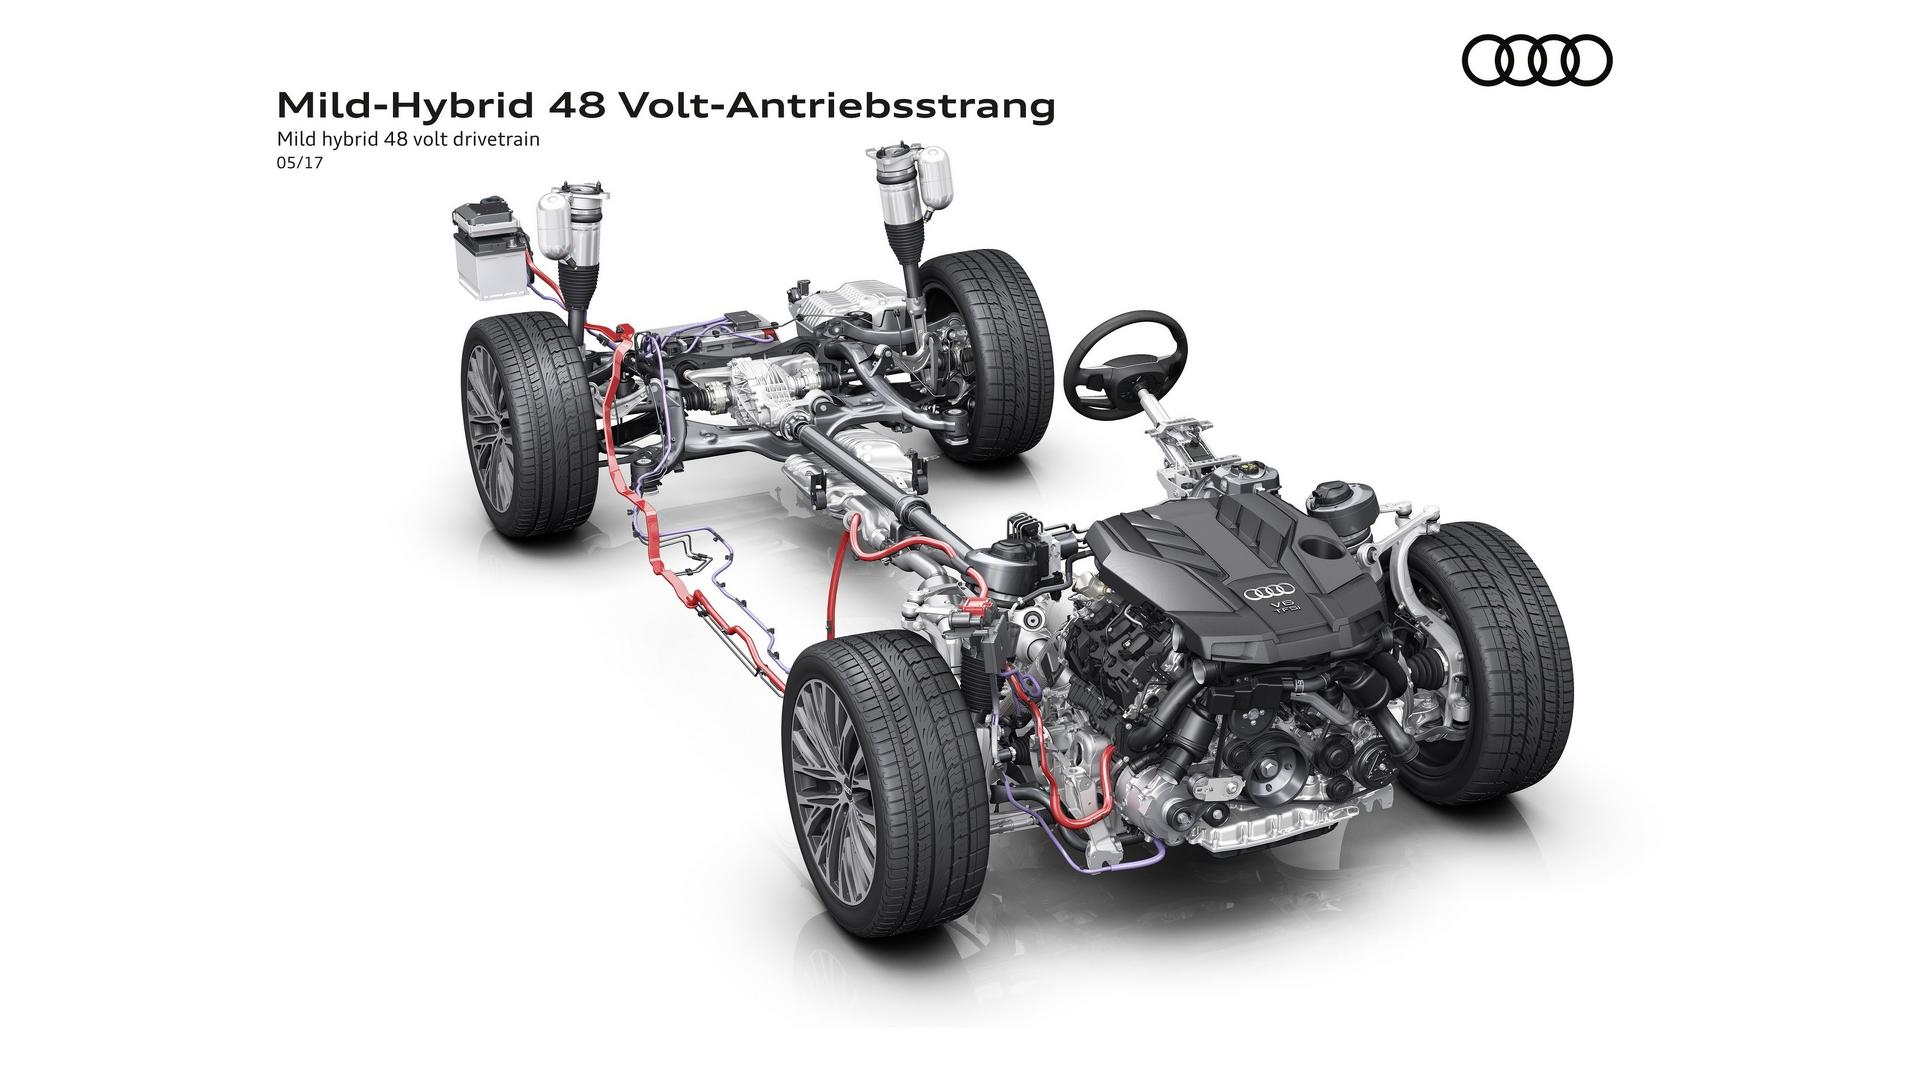 2018 Audi A8, 160 km/h hızla motor kapalı gidebilecek